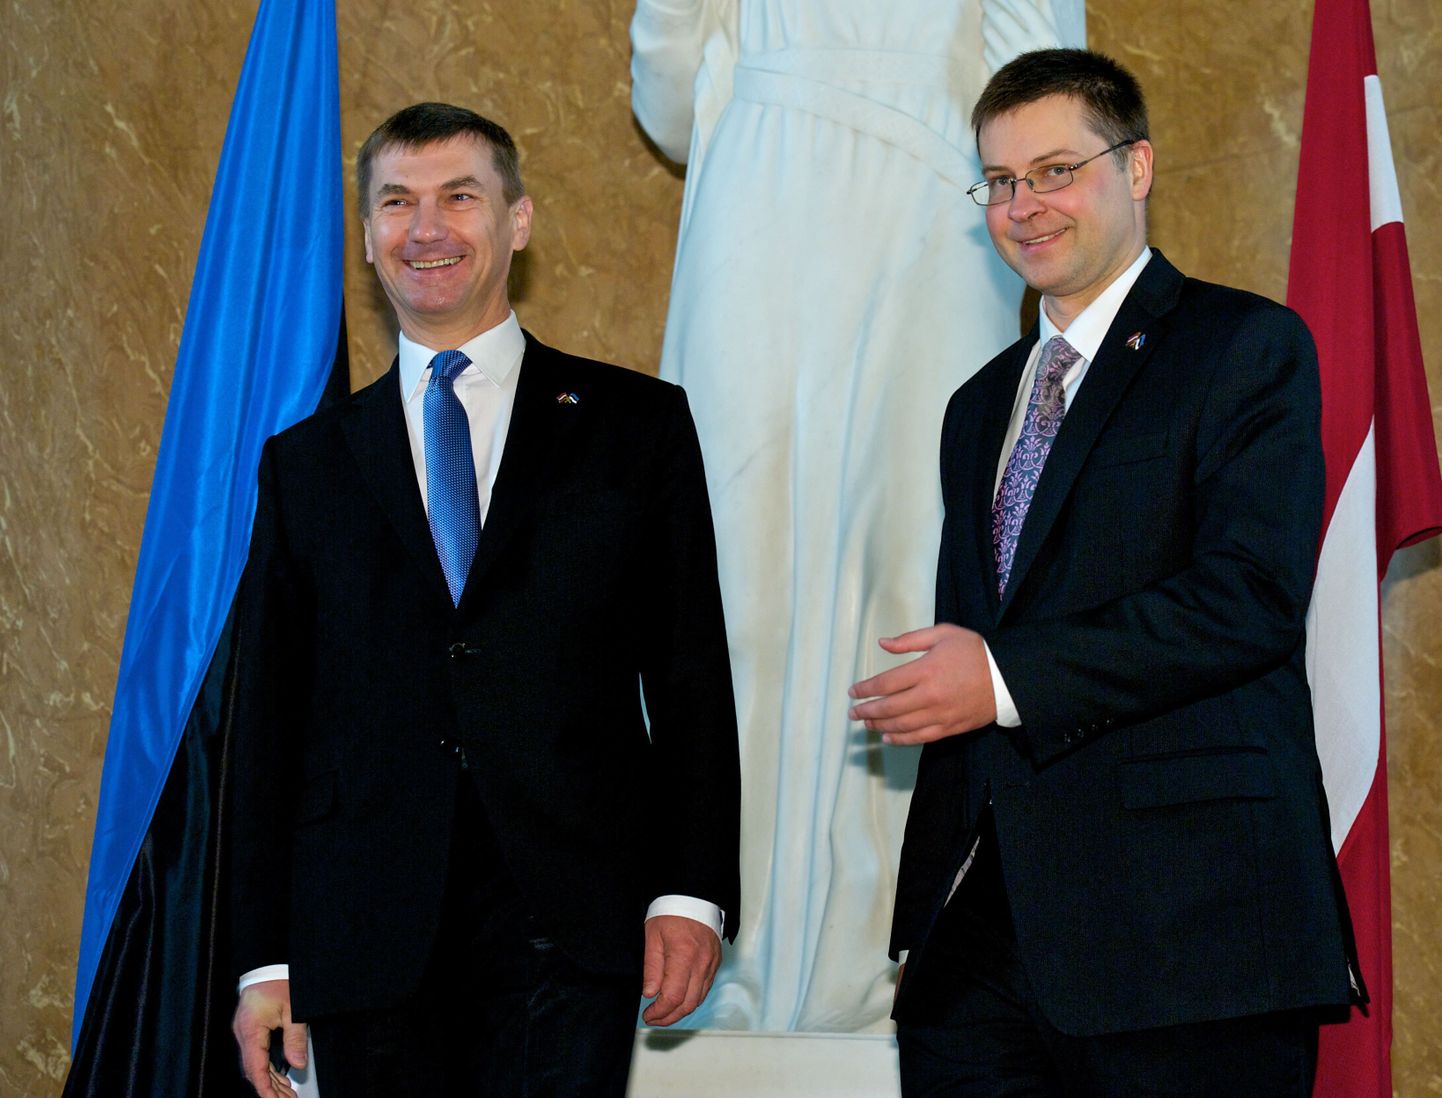 Eesti peaminister Andrus Ansip tänasel kohtumisel Läti peaministri Valdis Dombrovskisega.